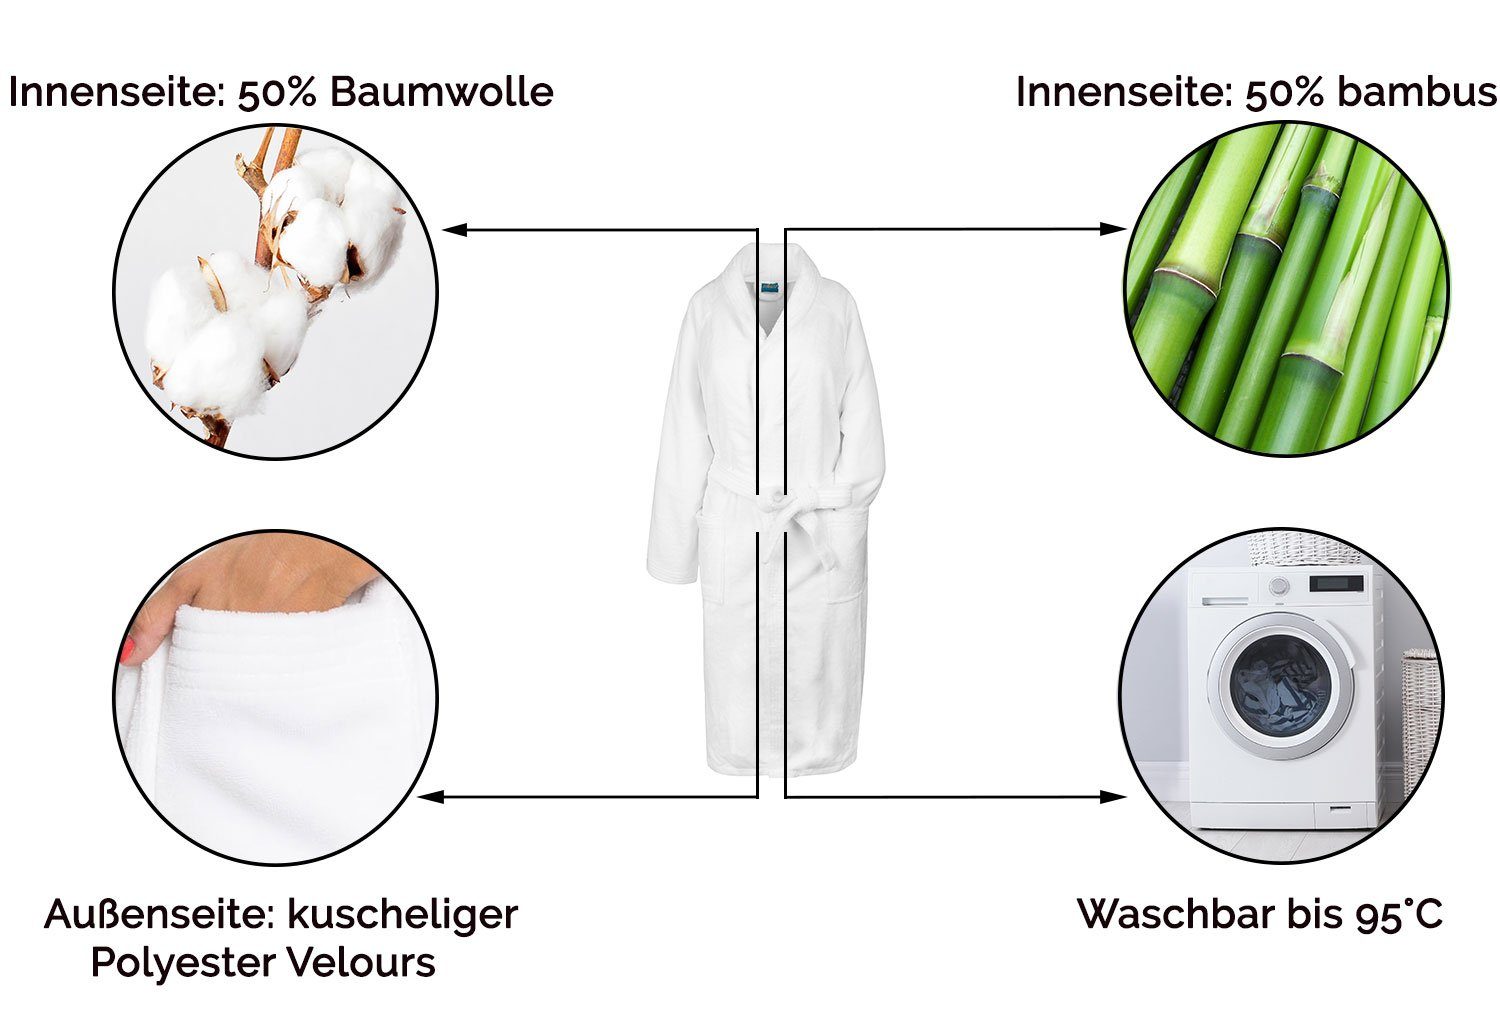 Schalkragen, Damen verfügbar Baumwolle, 50% und Unisex-Bademantel, für weiß in Polyester, Polyester, 50% Herren, 50% ZOLLNER S-XXL Baumwolle, Schalkragen, Gürtel, 50%